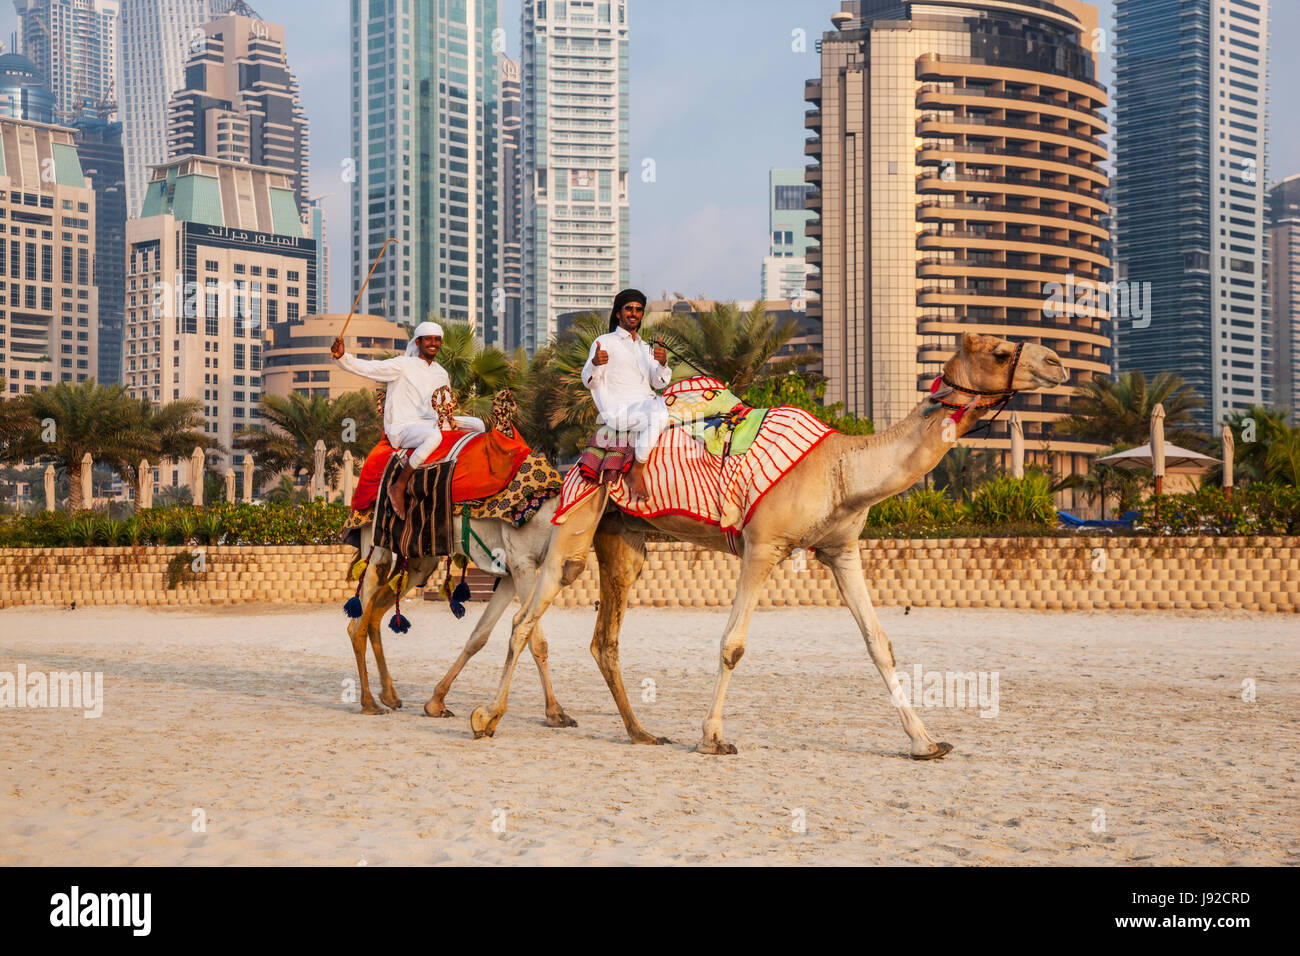 Camel ride in the Jumeirah beach in Dubai Stock Photo